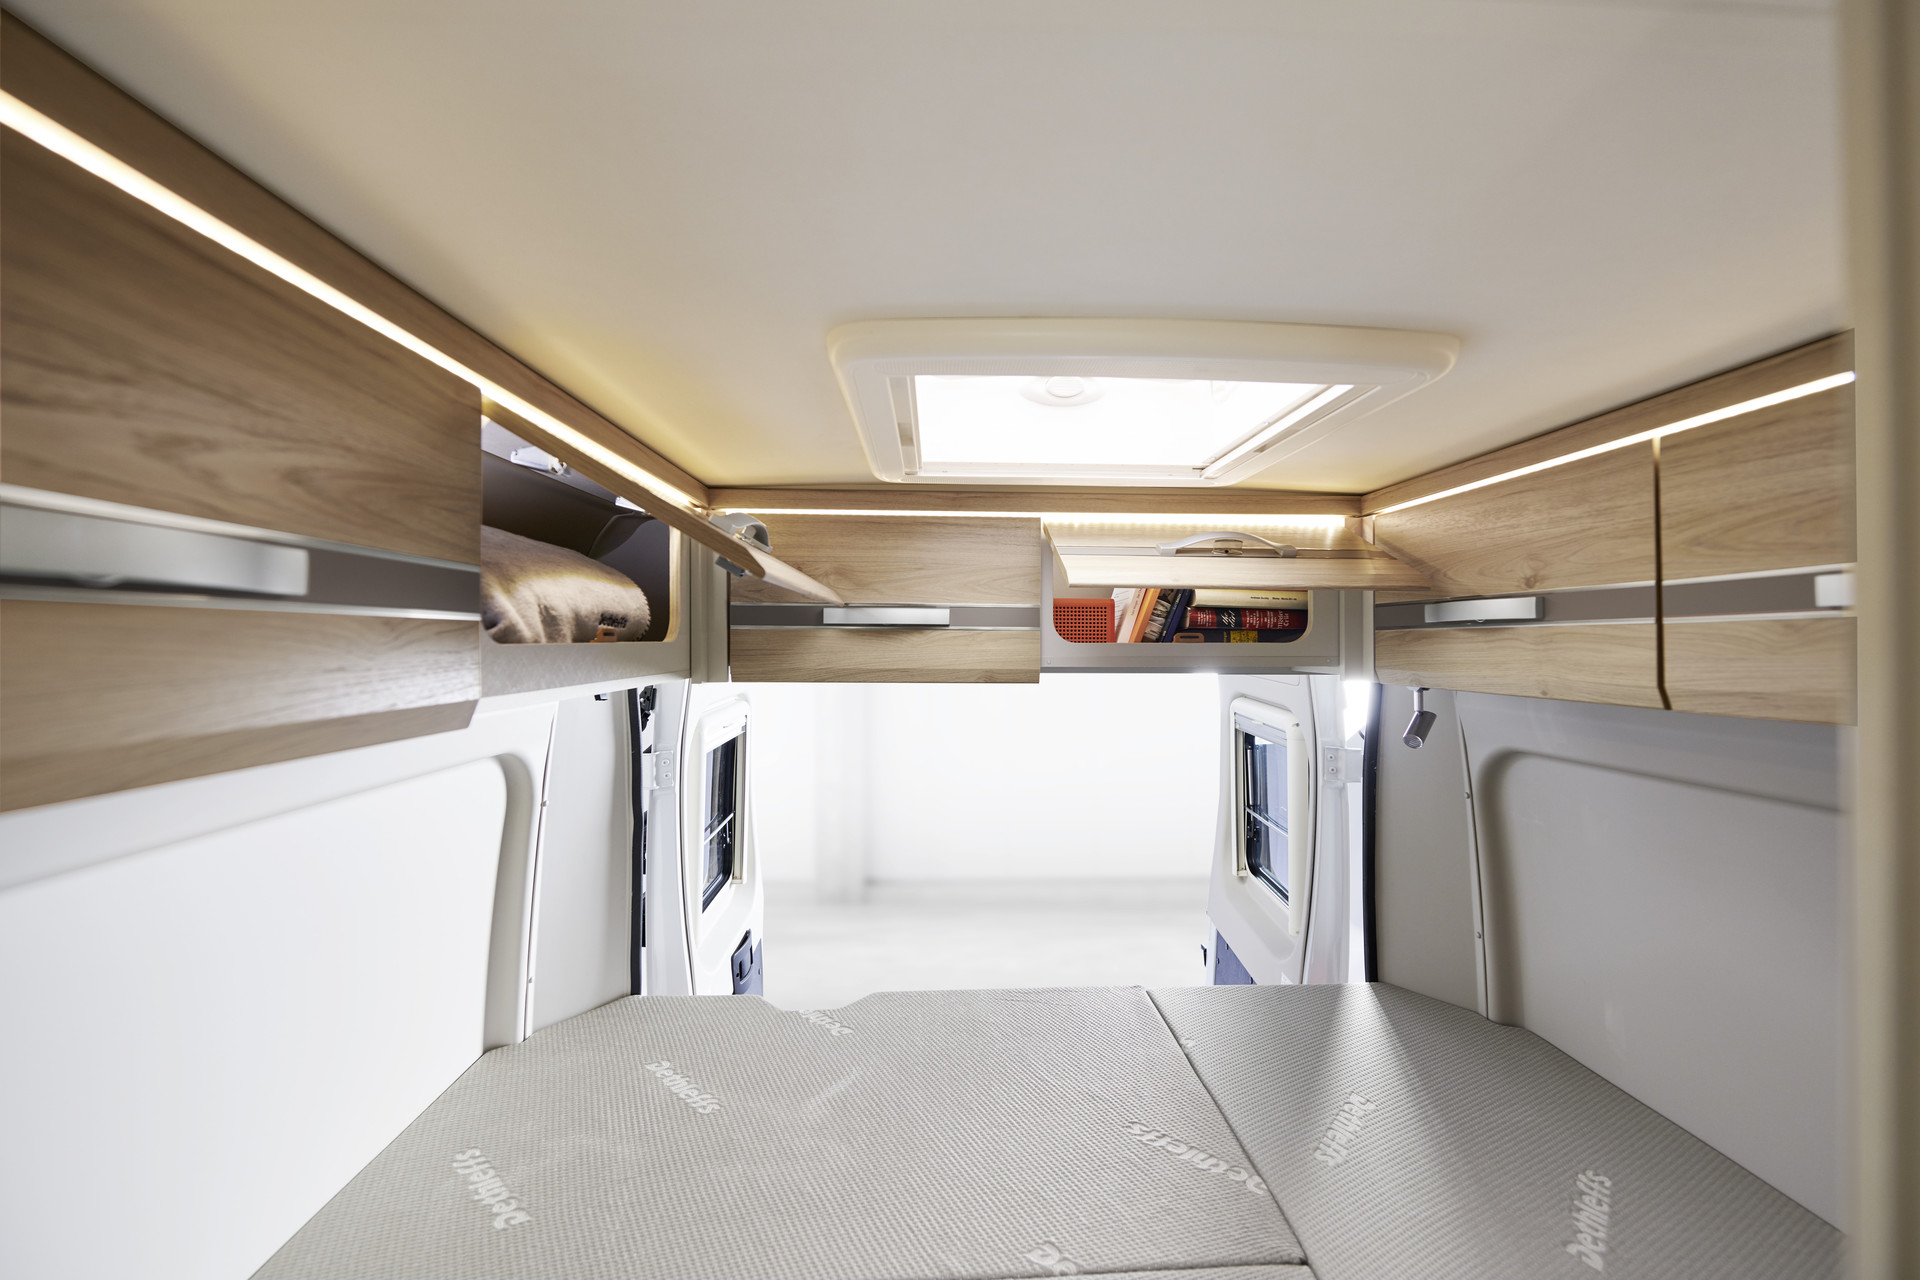 Los armarios altillos sobre las puertas traseras ofrecen espacio de almacenamiento adicional y disponen de iluminación indirecta.